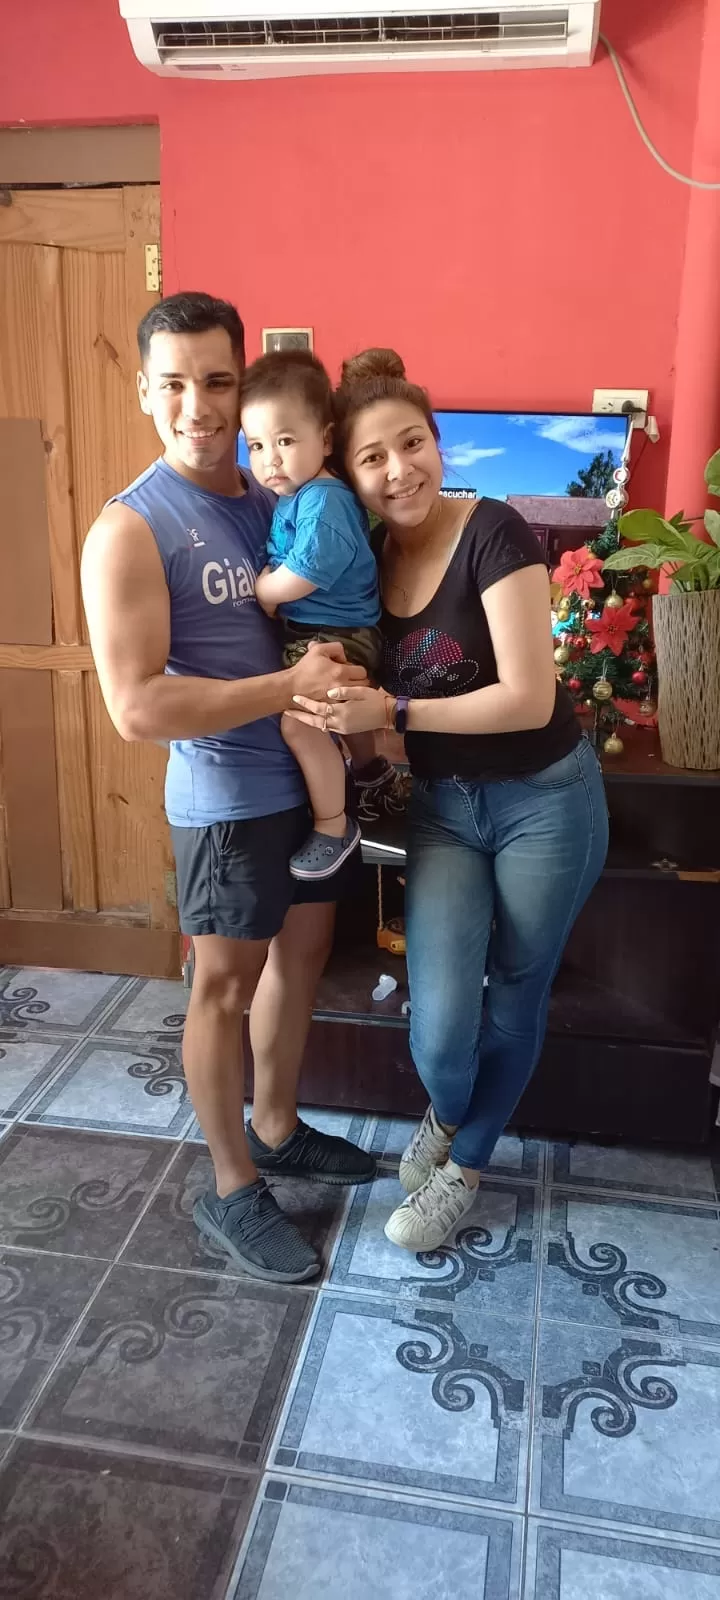 SATISFACCIÓN TOTAL. Fernando Nicolás Zurita pasará una Nochebuena “sin que nos falte nada” con su hijo de un año y su pareja.   